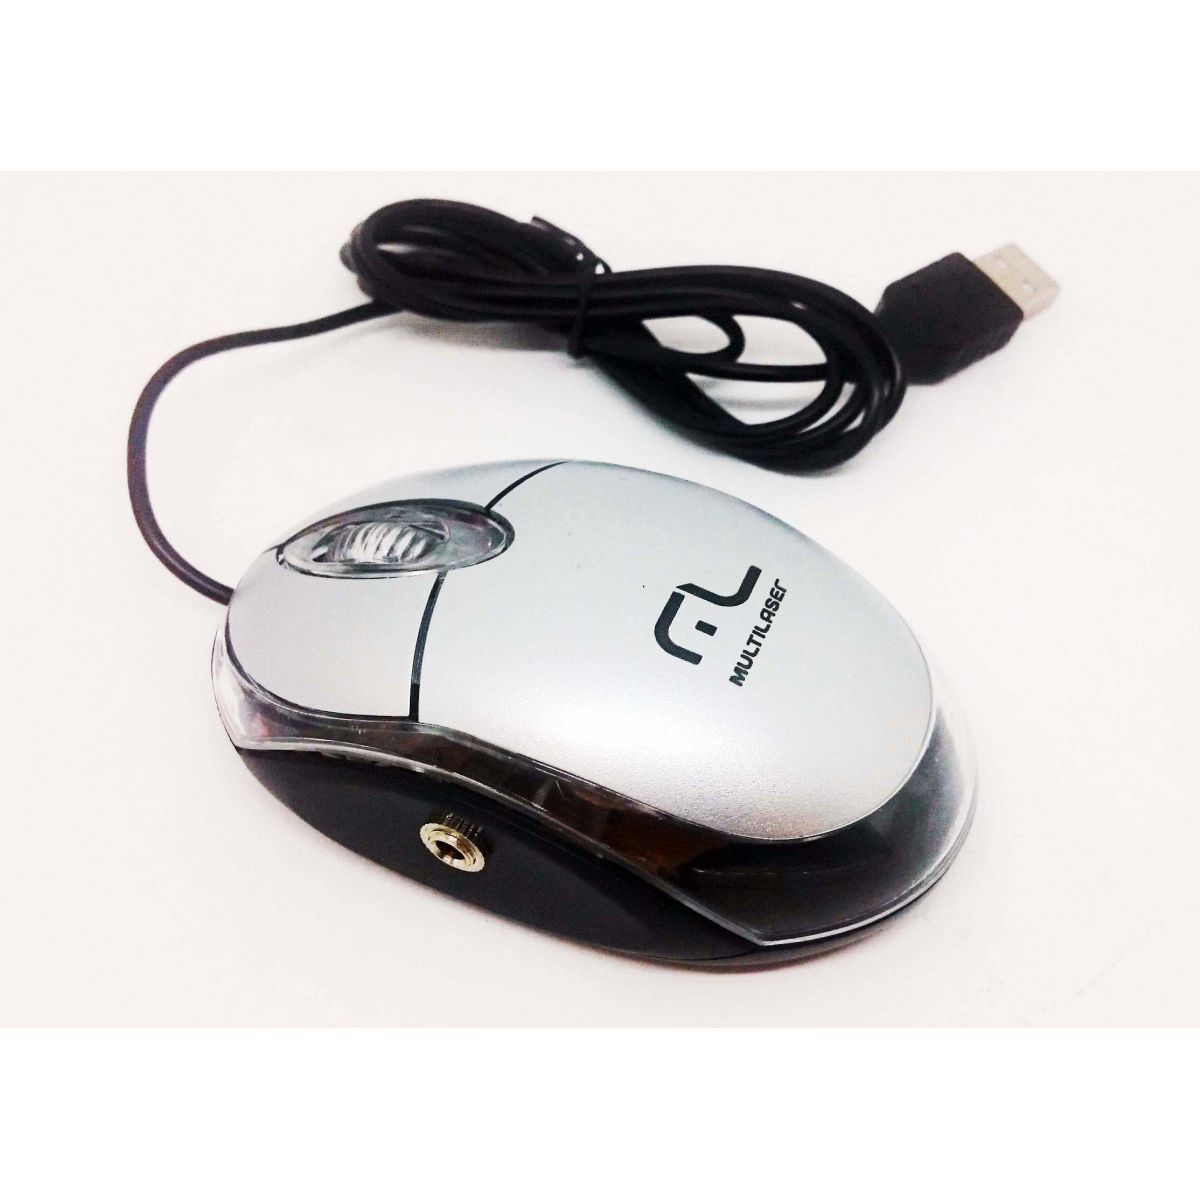 Mouse Adaptado com 2 saídas para Acionadores